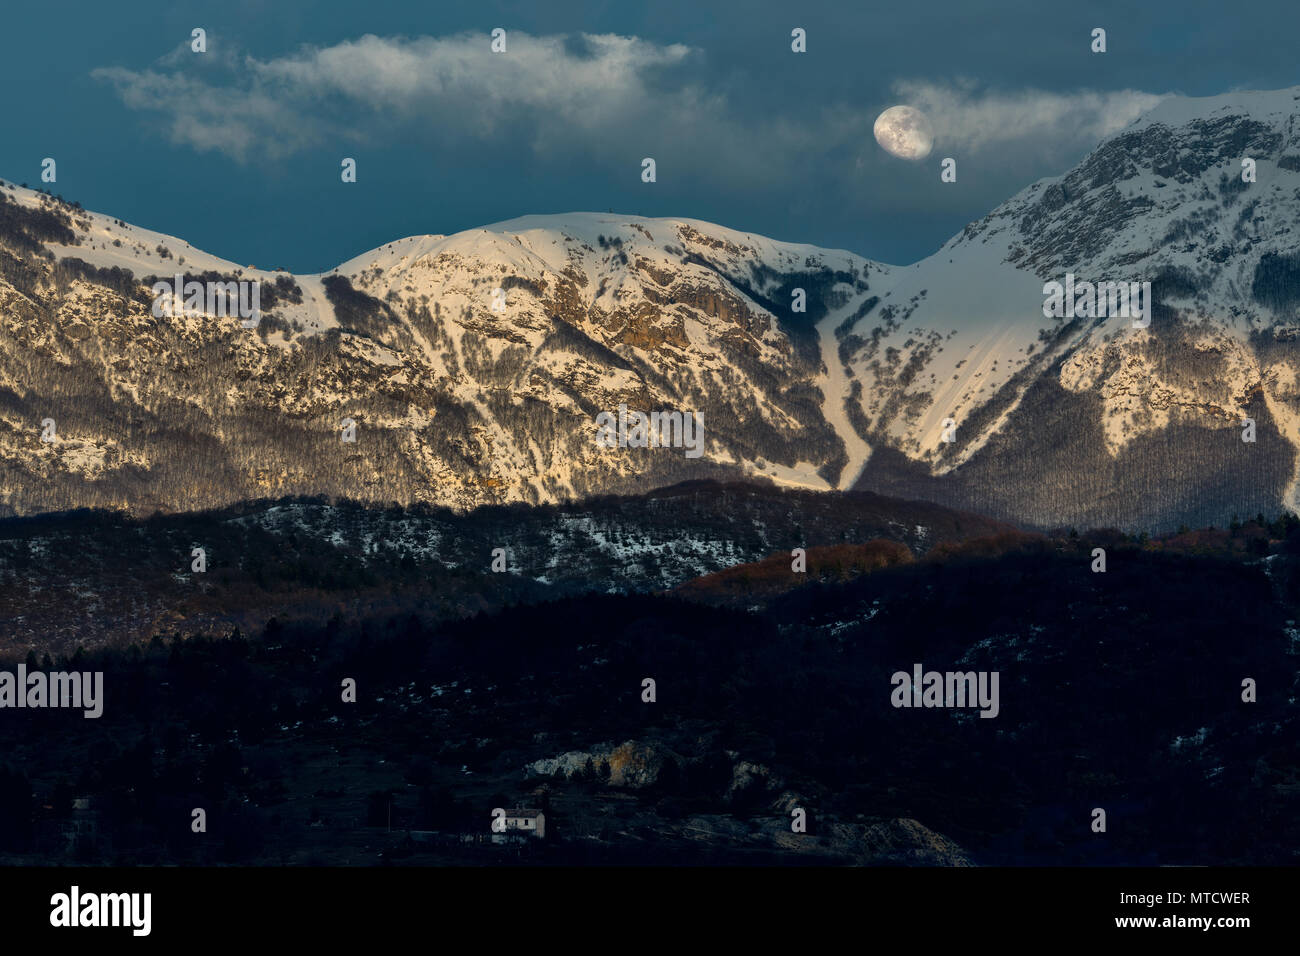 La montagne enneigée avec lever de lune. Abruzzo Banque D'Images